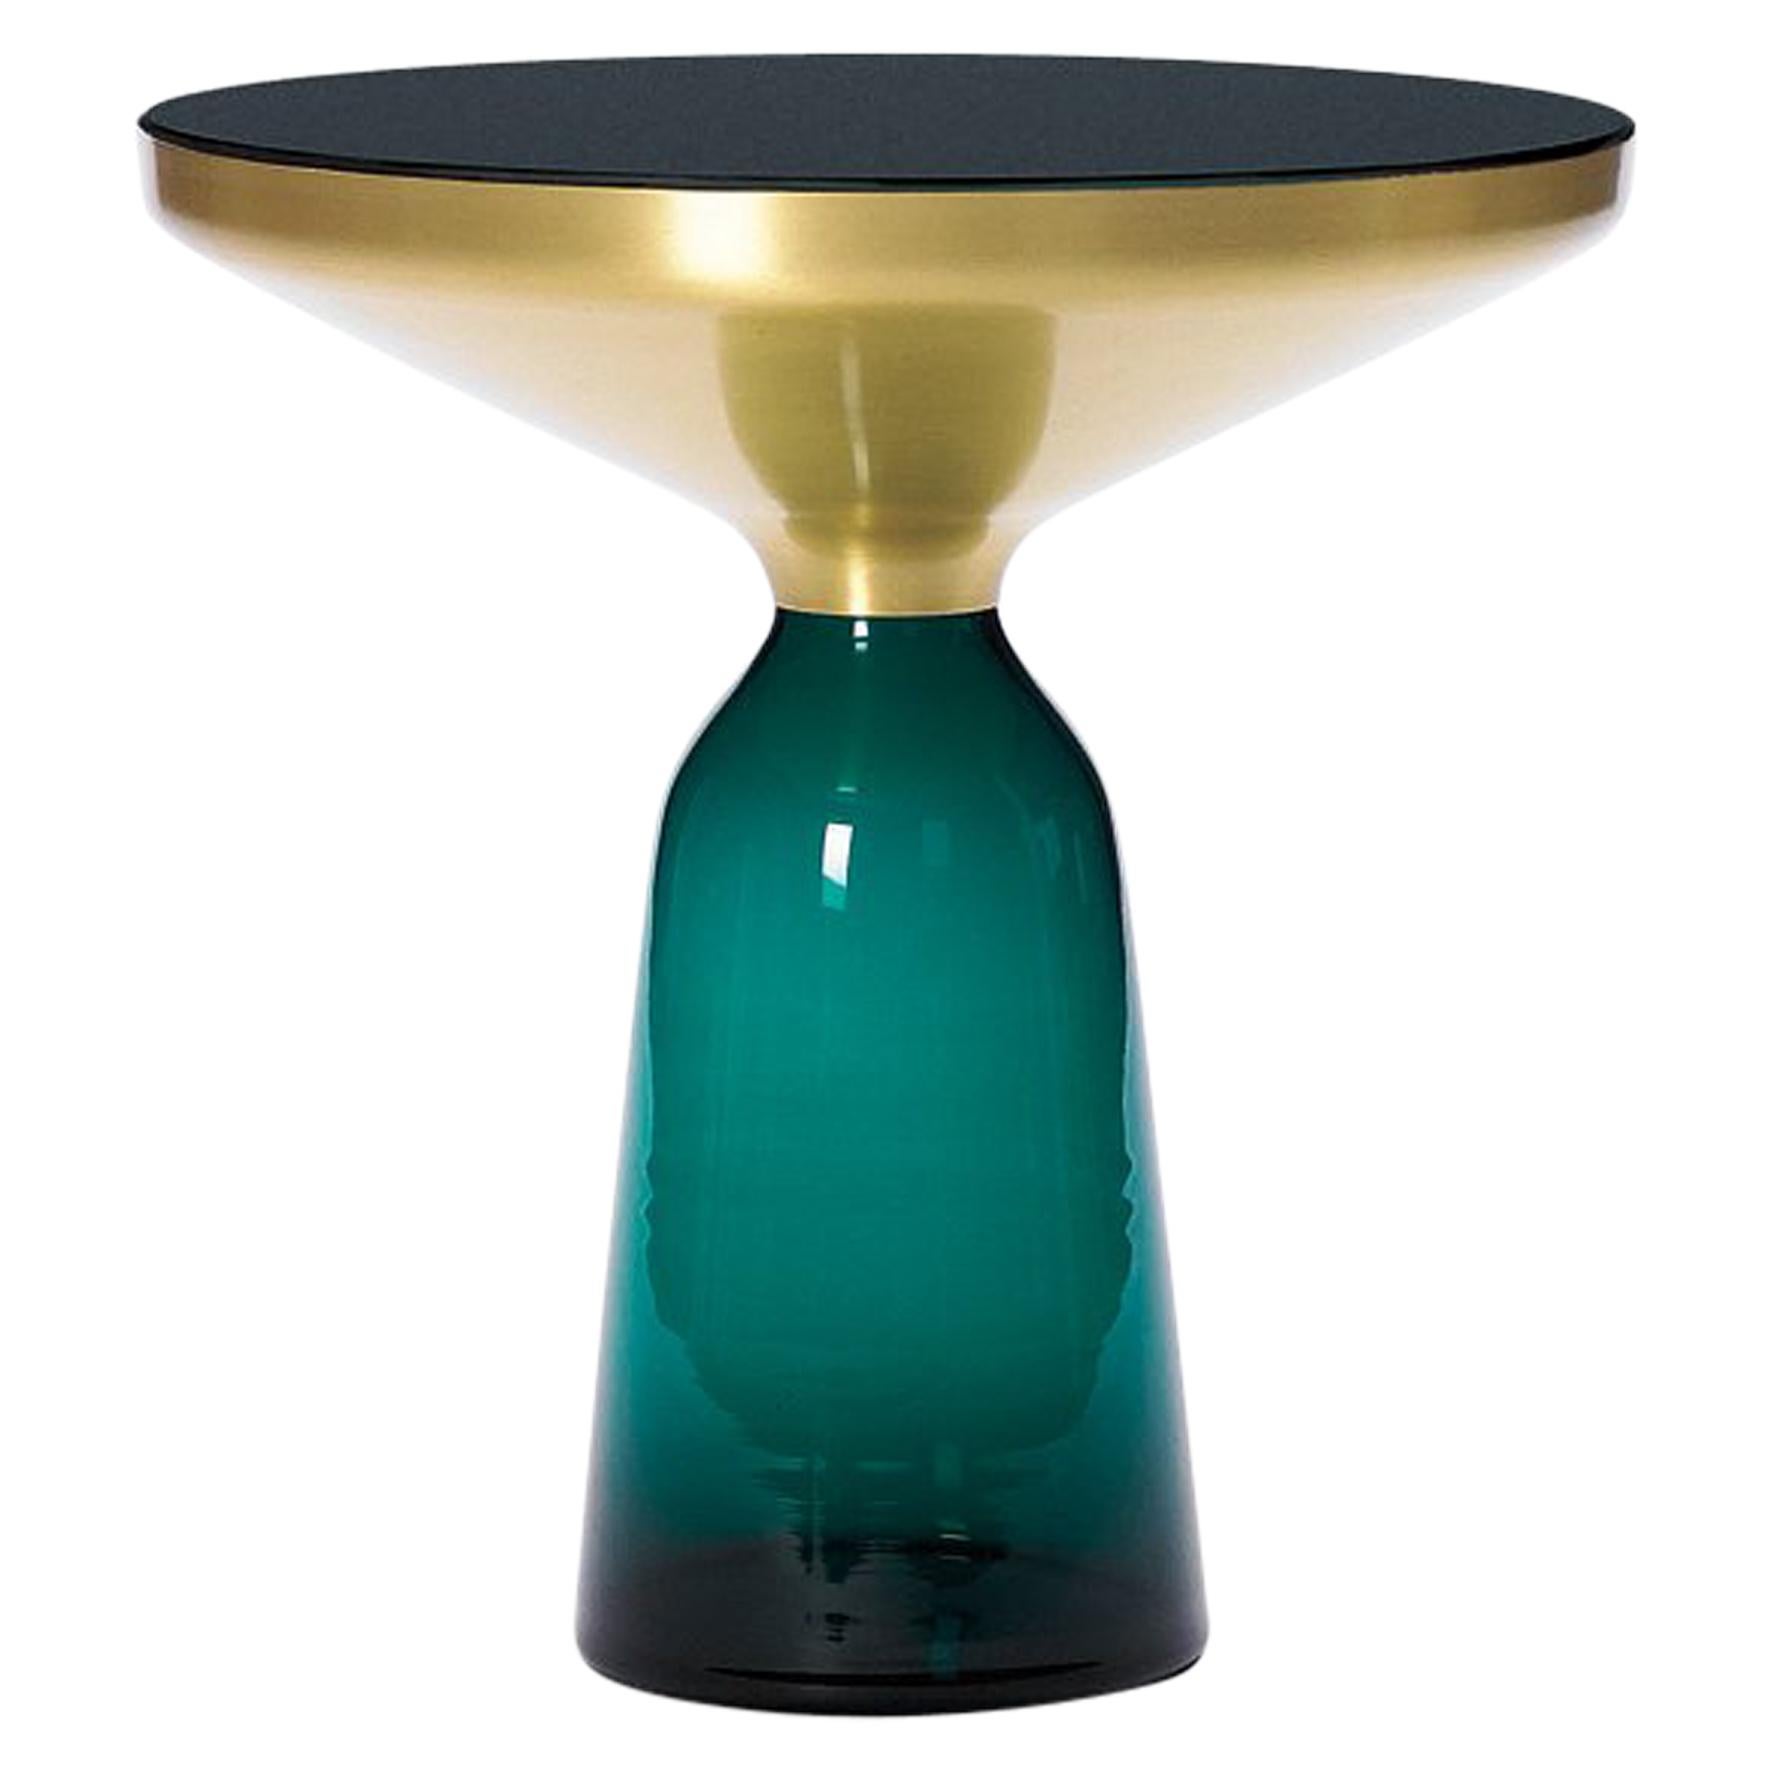 La table Bell de Sebastian Herkner bouleverse nos habitudes de perception en utilisant le matériau léger et fragile qu'est le verre comme base pour un plateau en métal qui semble flotter au-dessus. Soufflée à la main de manière traditionnelle à